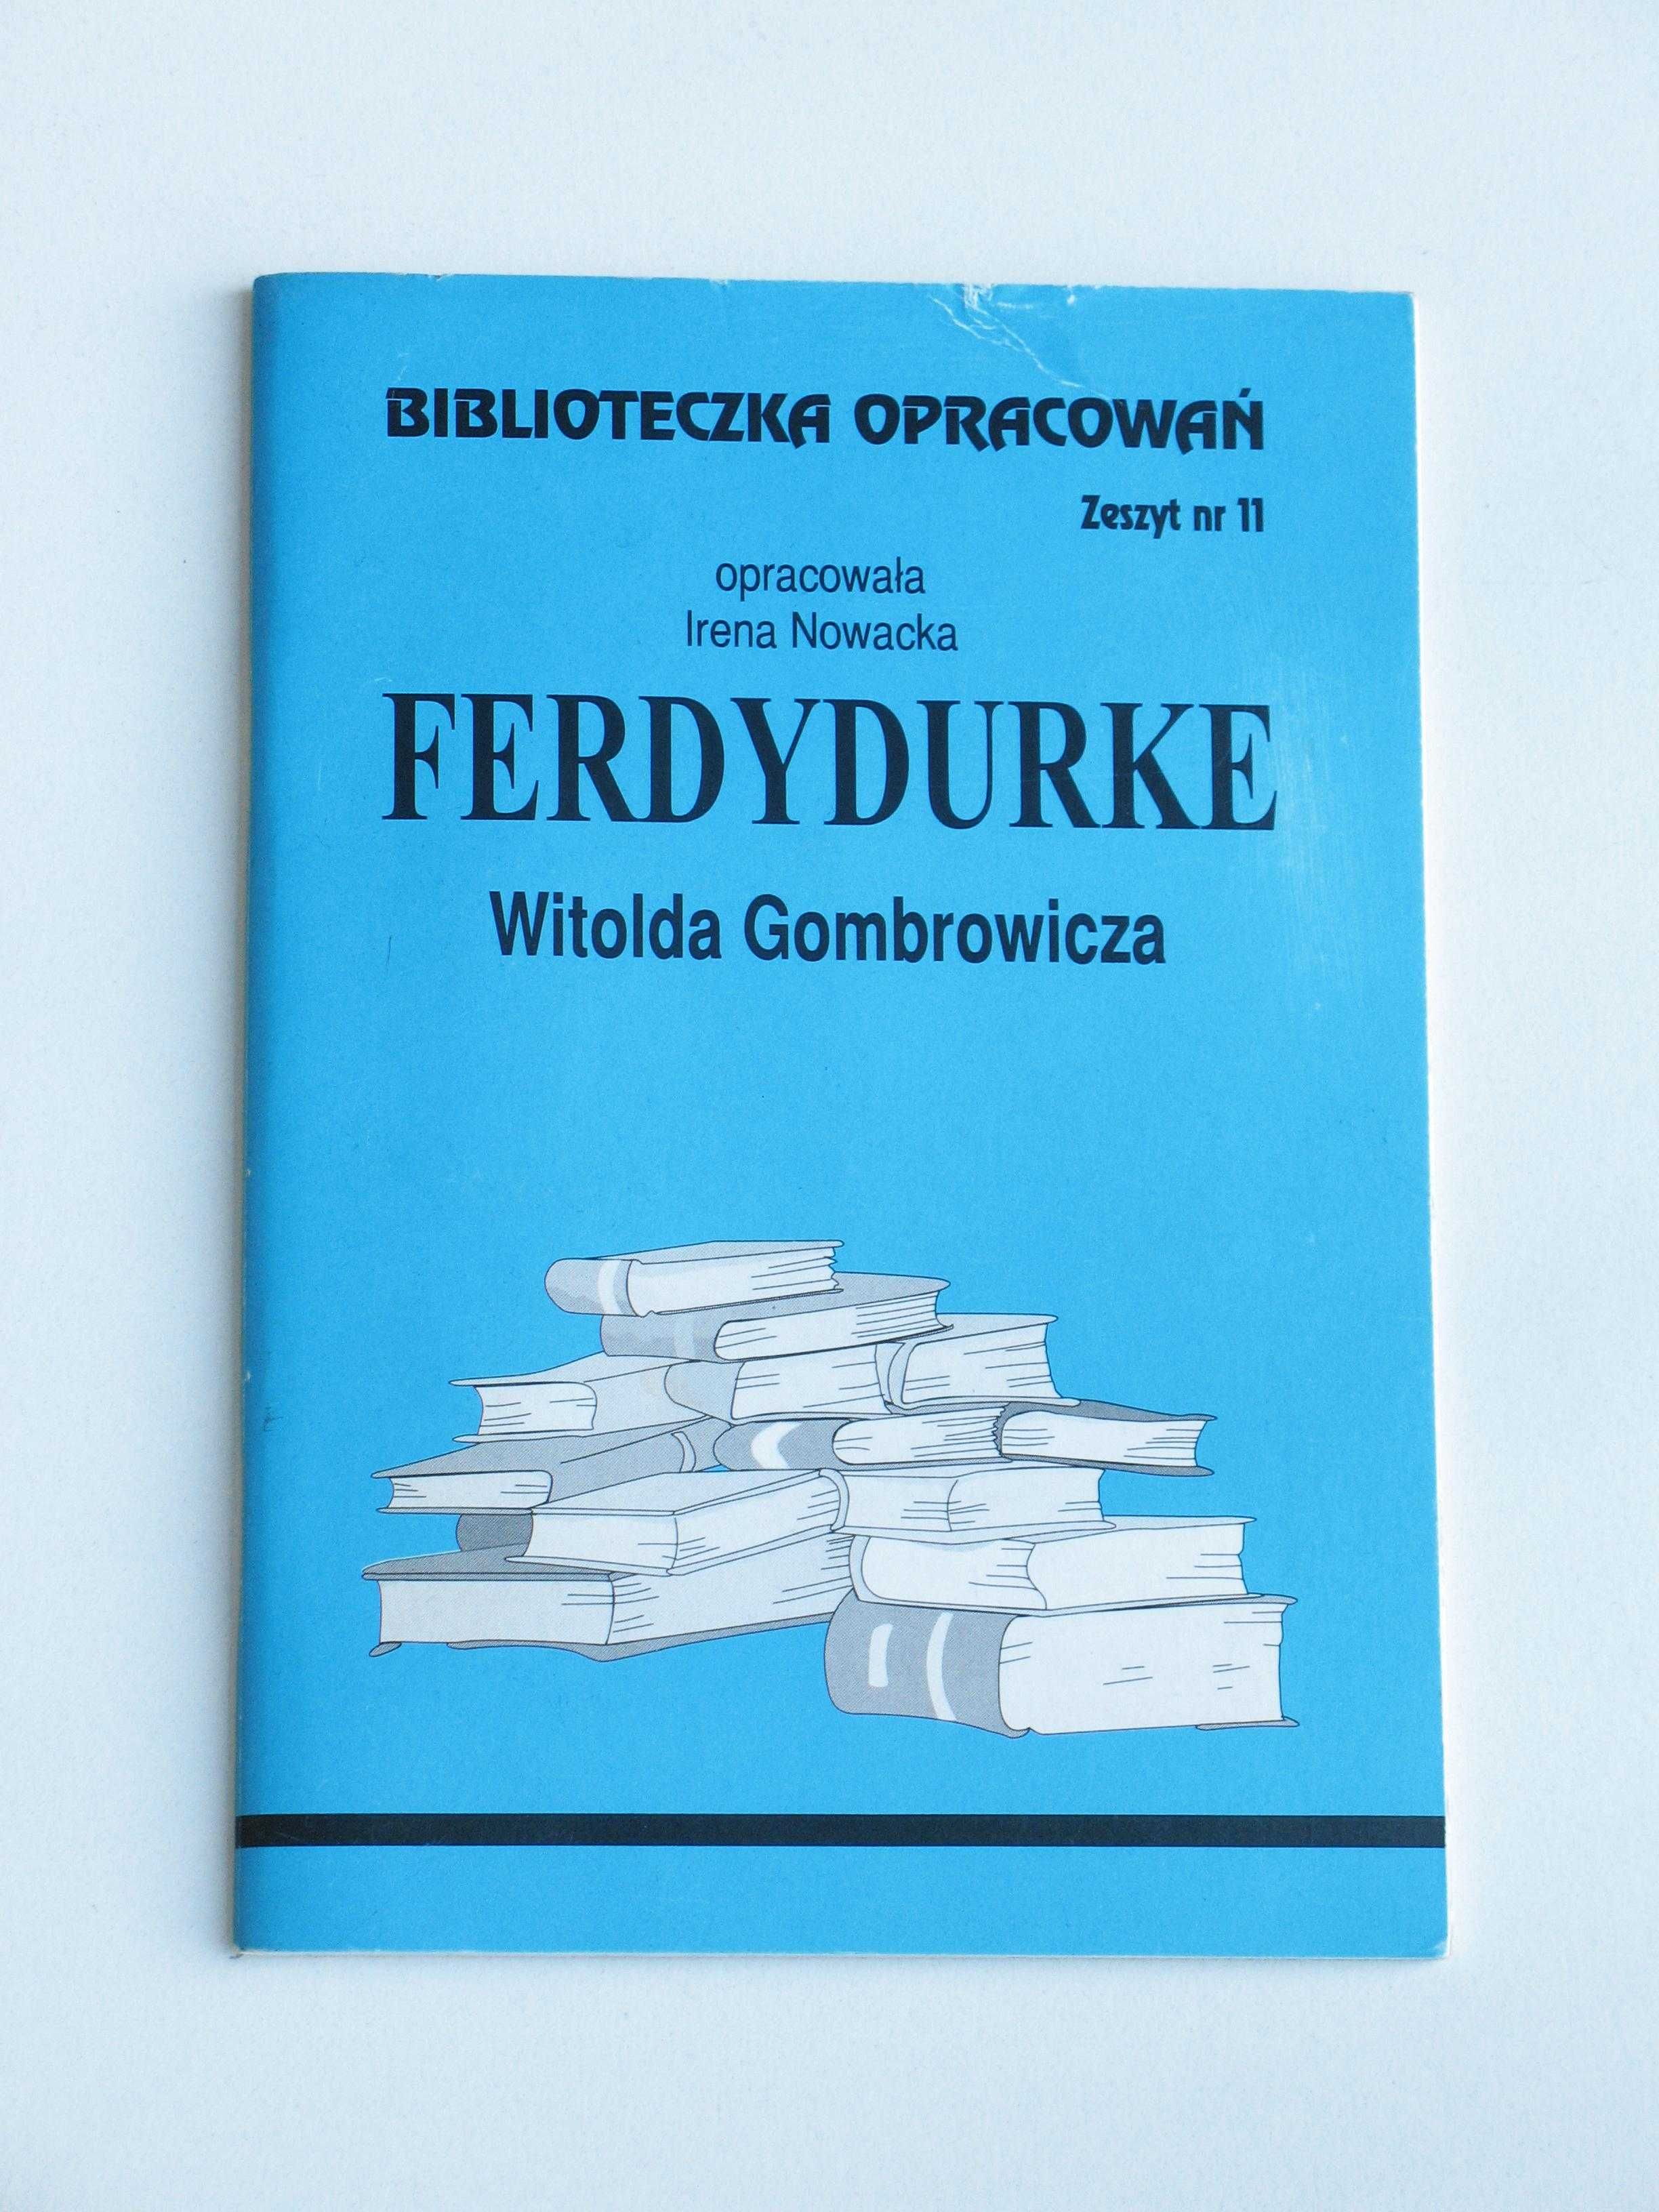 Biblioteczka opracowań - Ferdydurke Witolda Gombrowicza